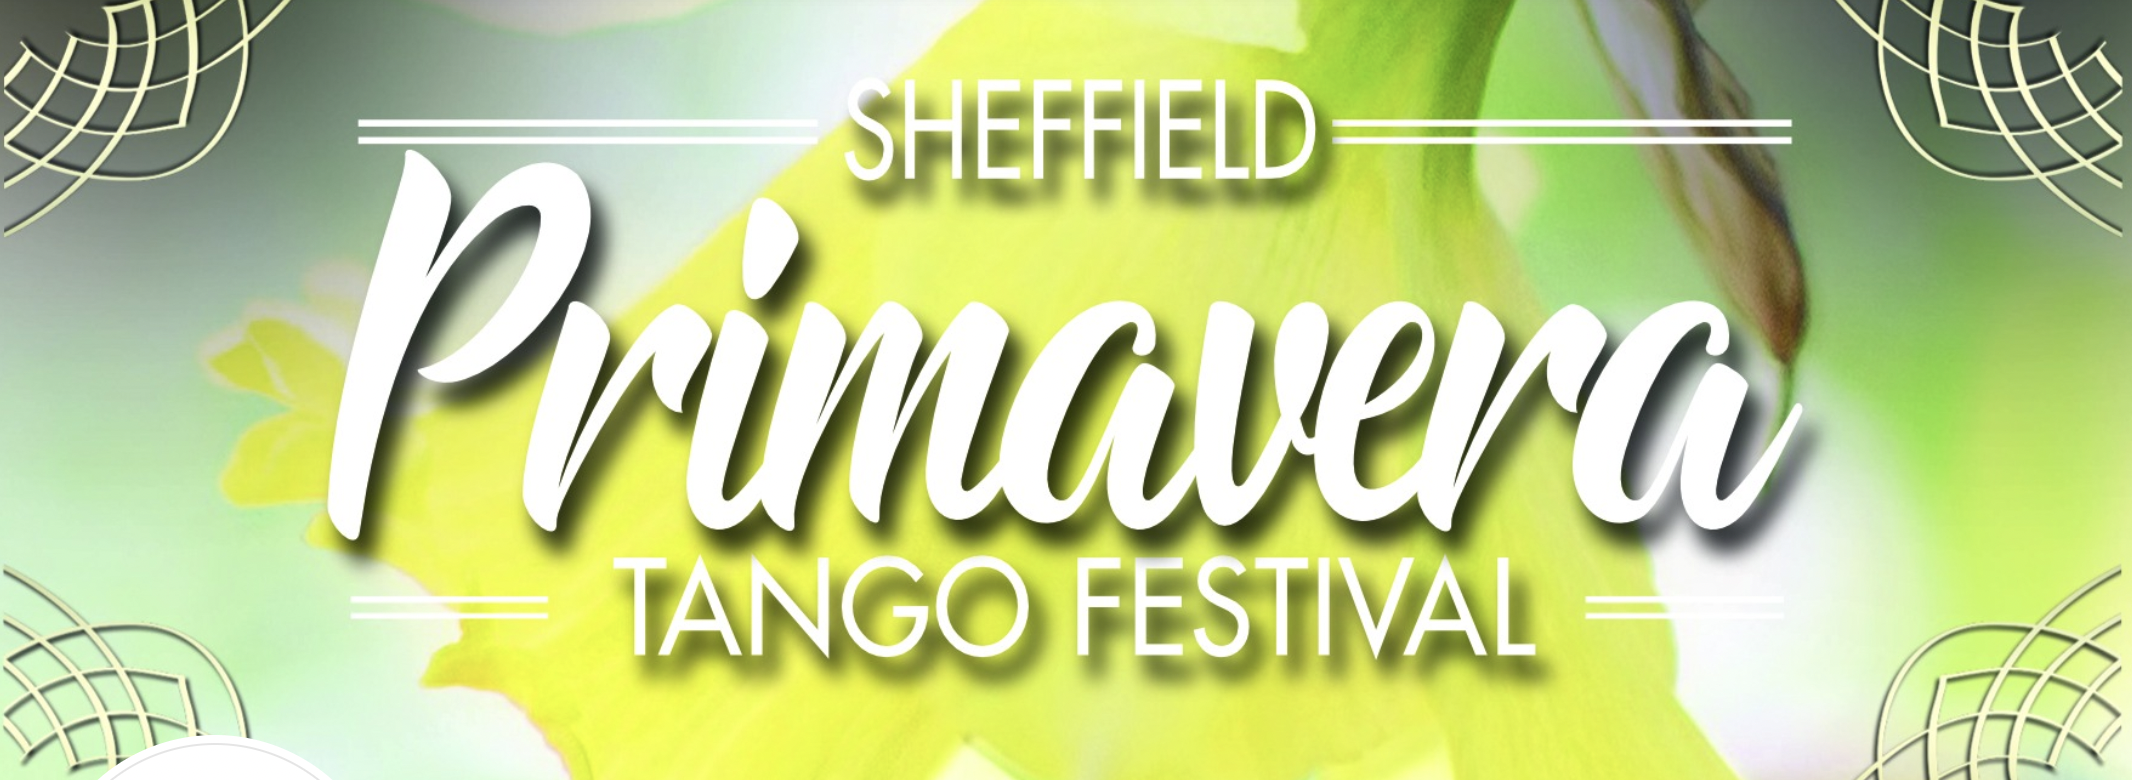 Sheffield Primavera Tango Festival